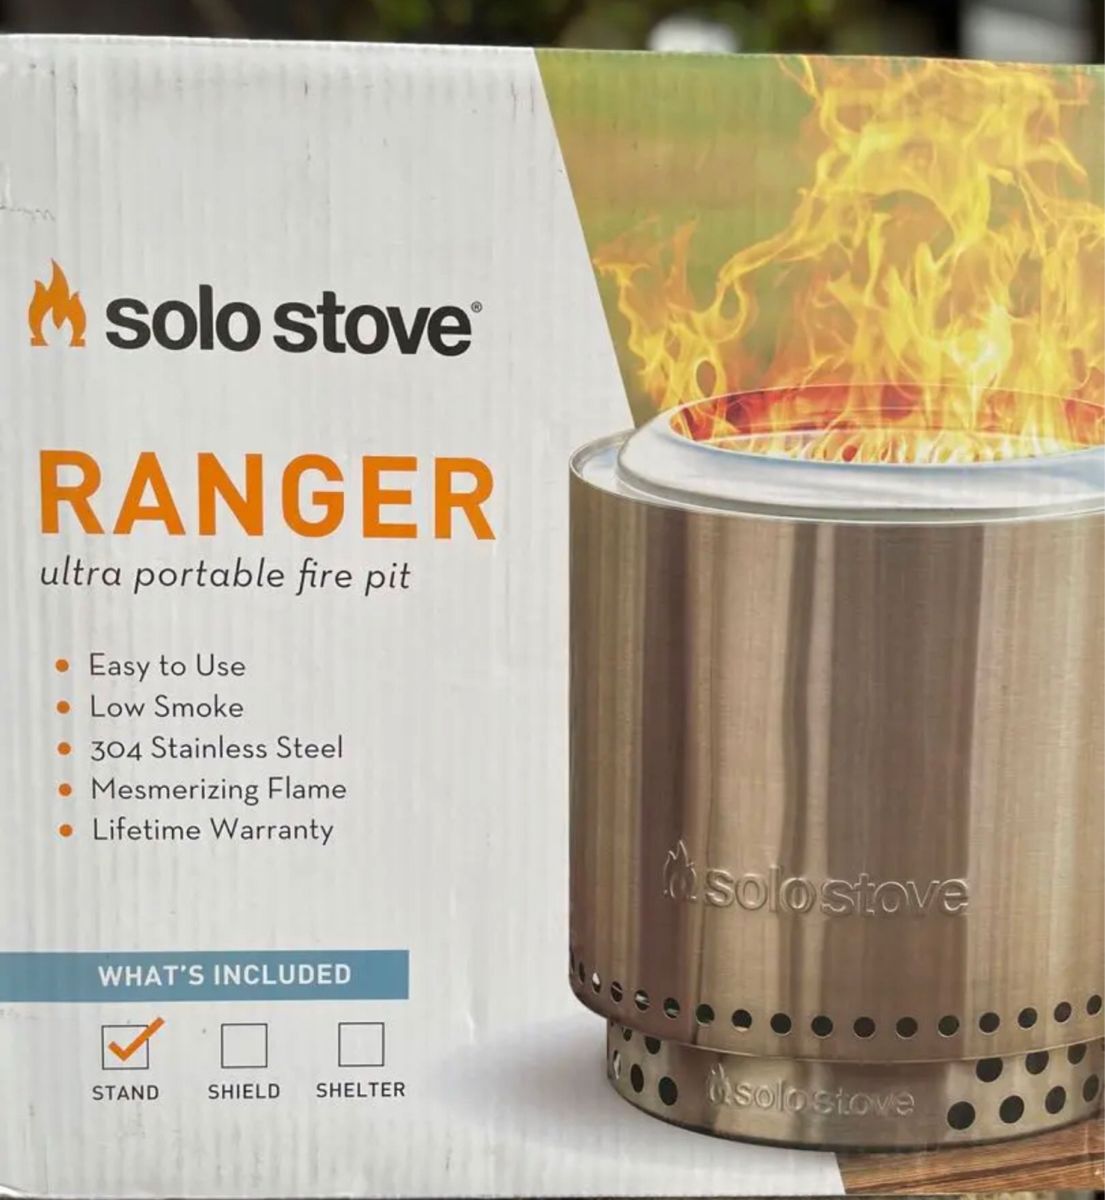 新品全国送料無料 SOLO STOVE RANGER ソロストーブ レンジャー スタンド 収納ケース付属 二次燃焼 限定1個